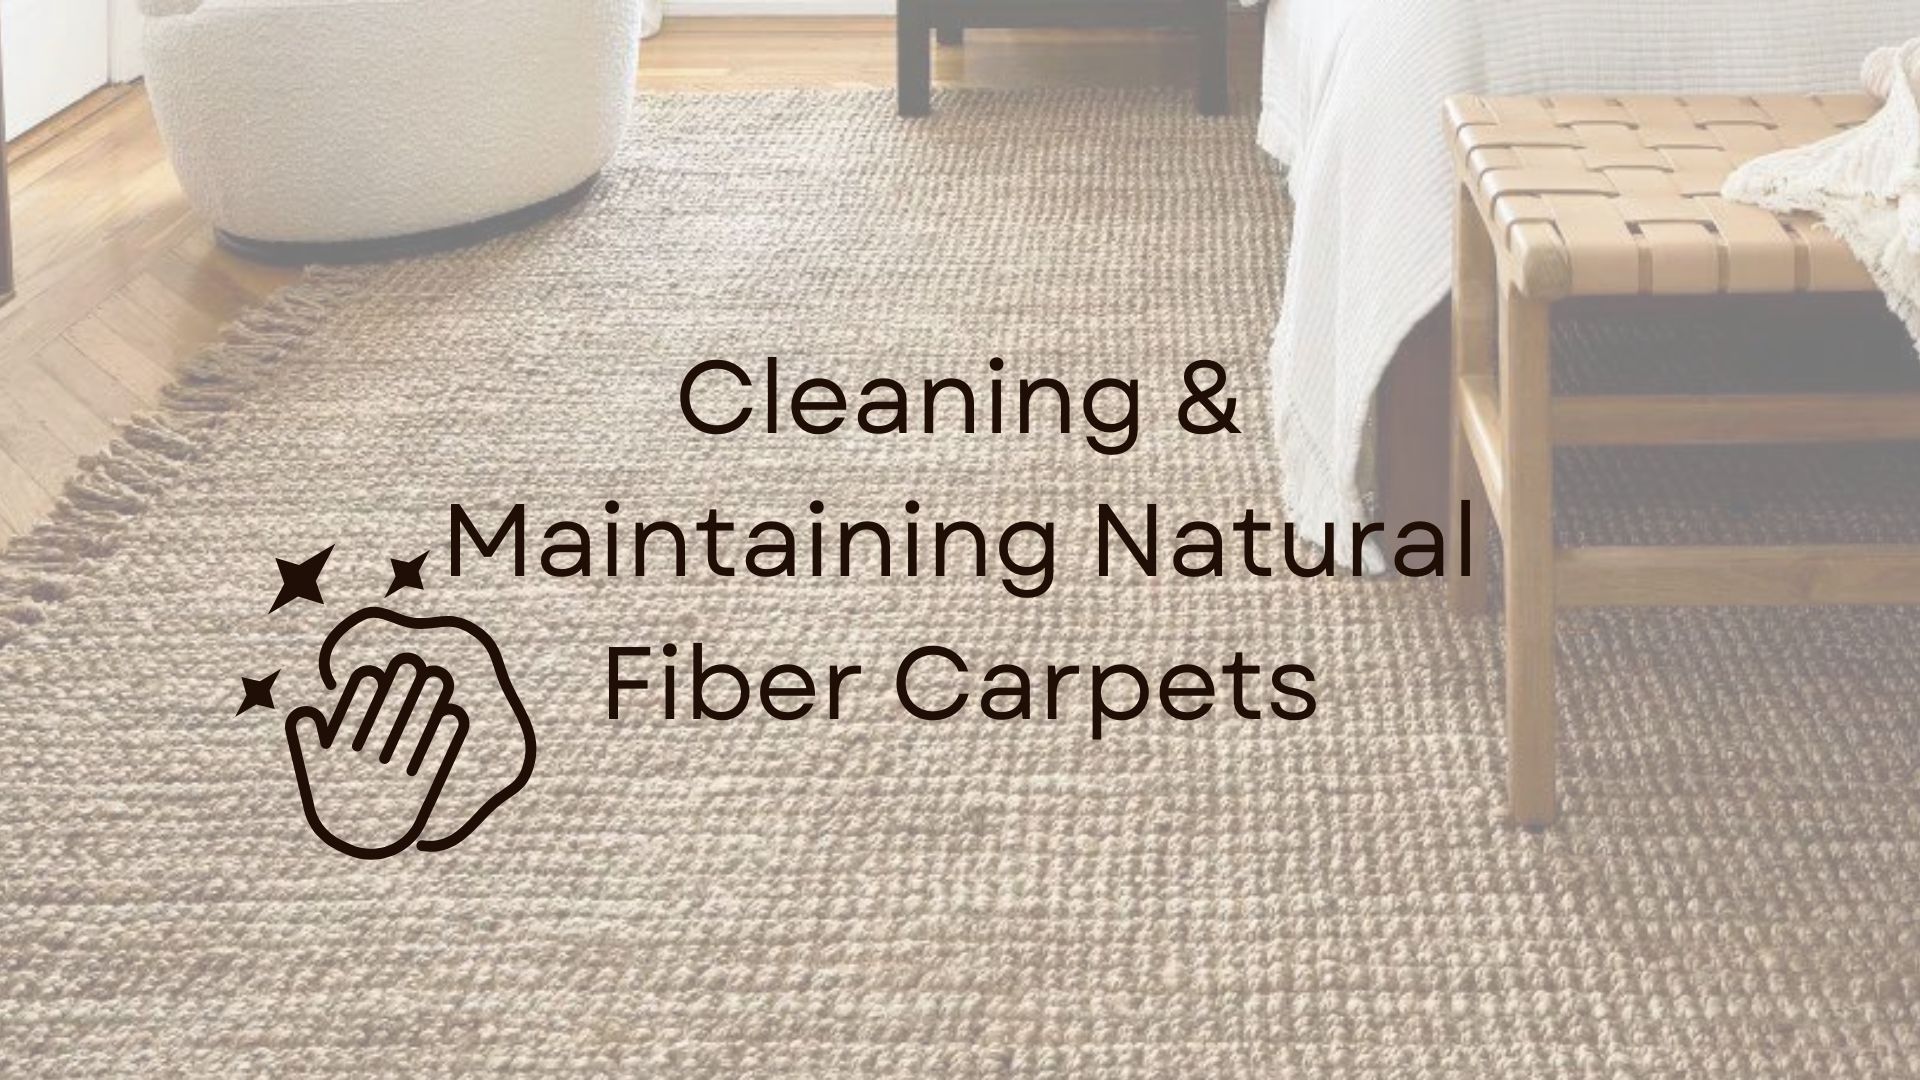 Carpet Cleaning Companies Lexington Ky